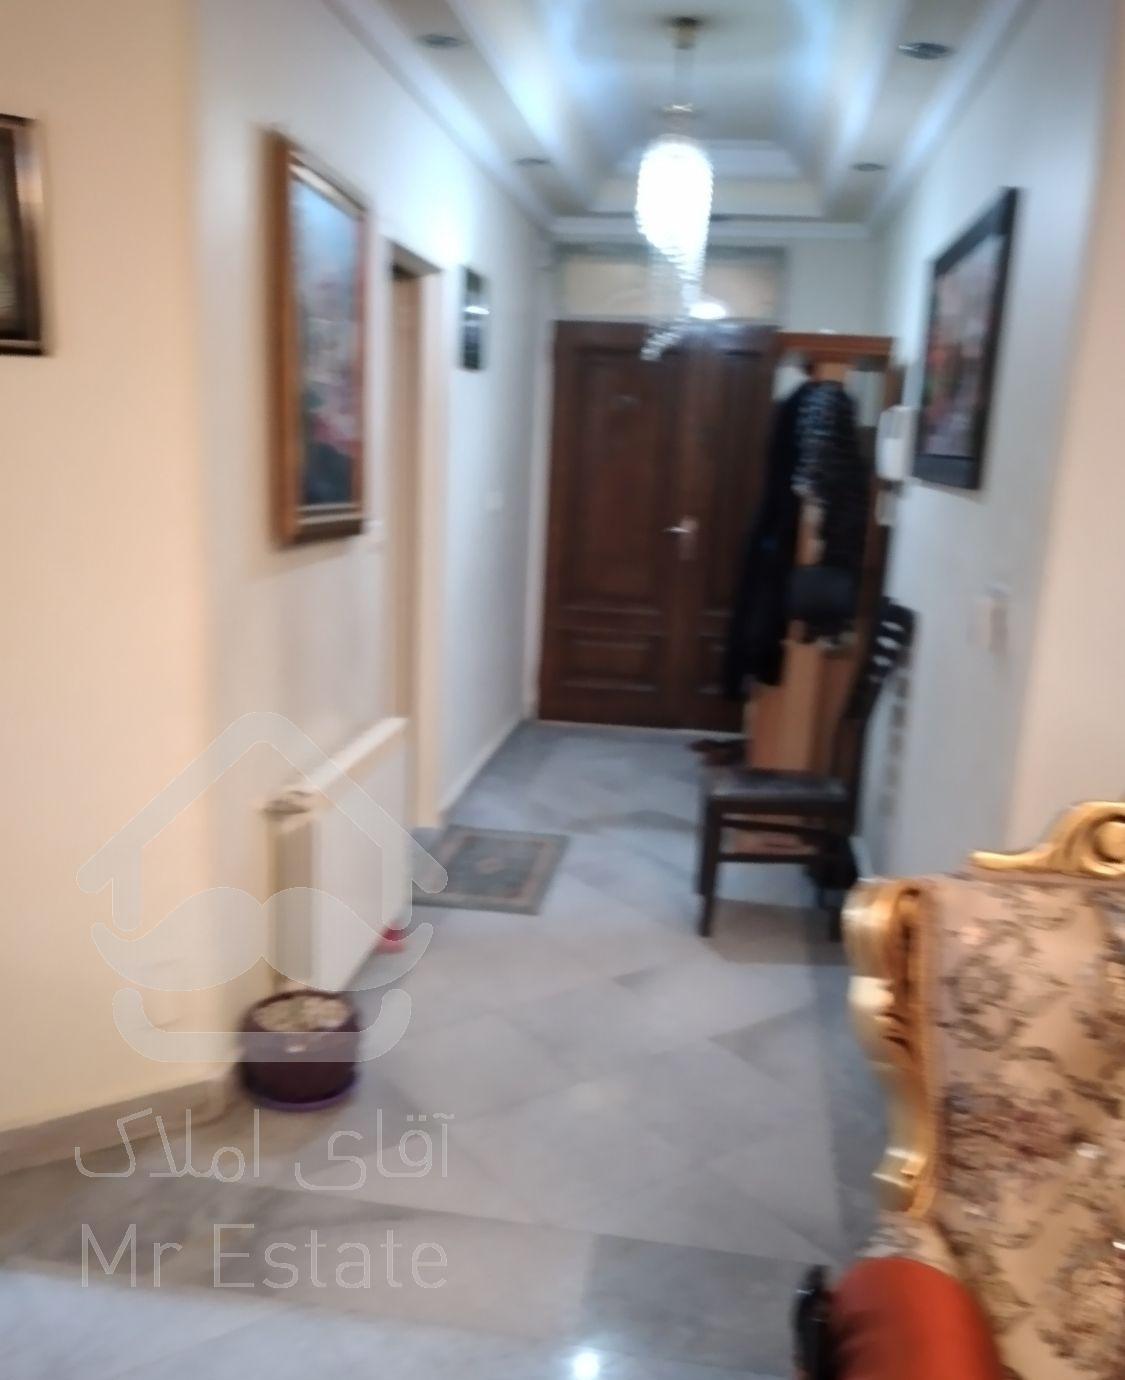 آپارتمان فروشی در شهید عراقی ۹۳متر ی آگهی شخصی